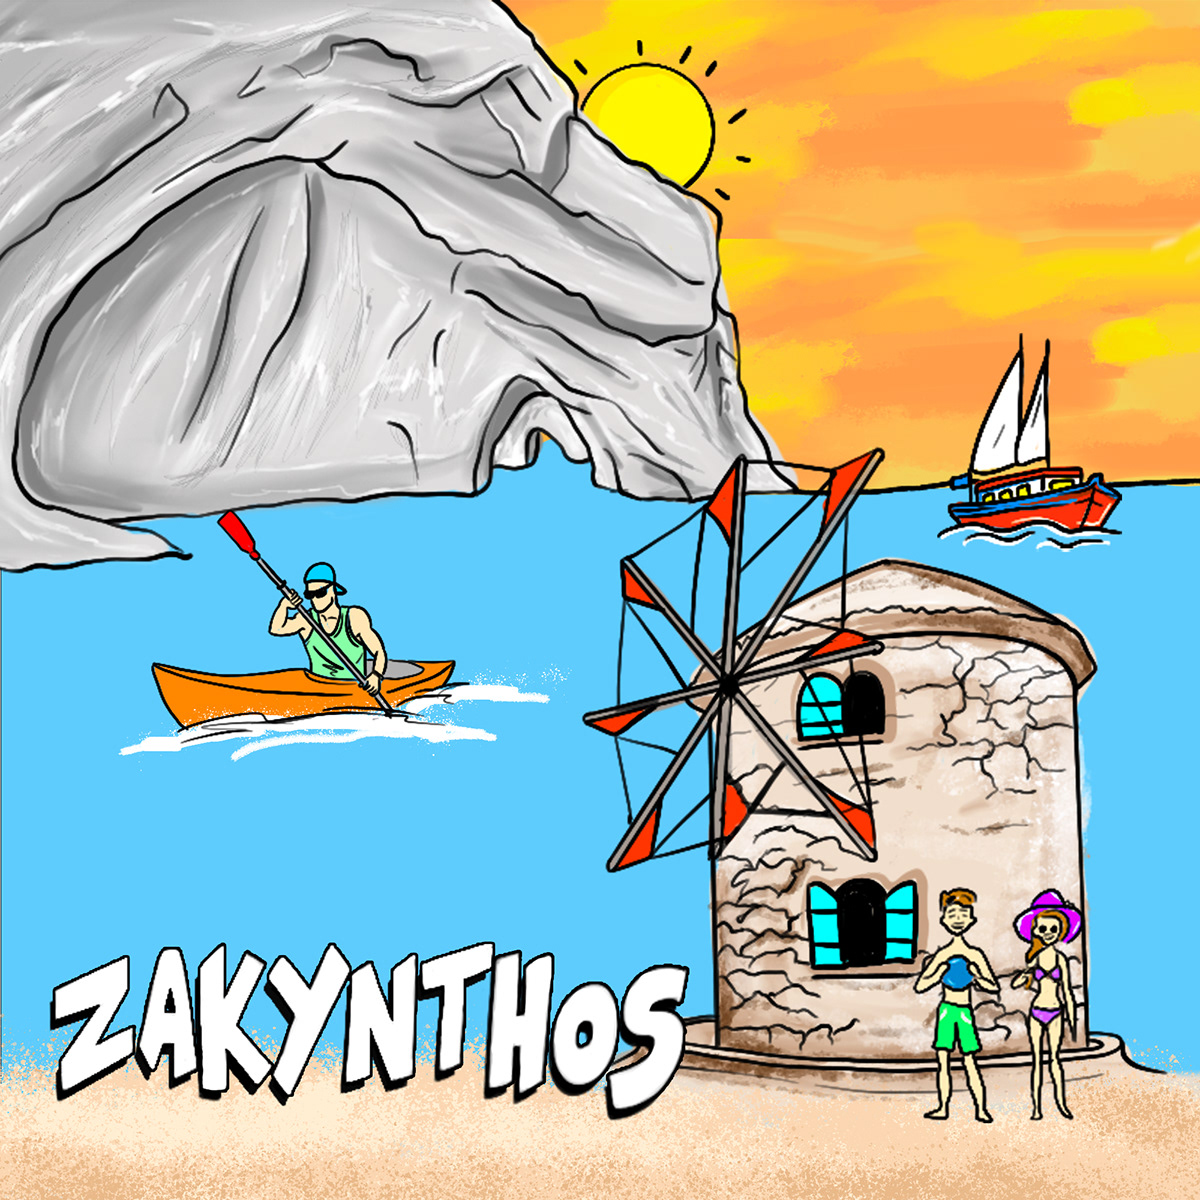 ILLUSTRATION  Greece zakynthos Island nft etsy opensea Digital Art  etsy shop opensea nft